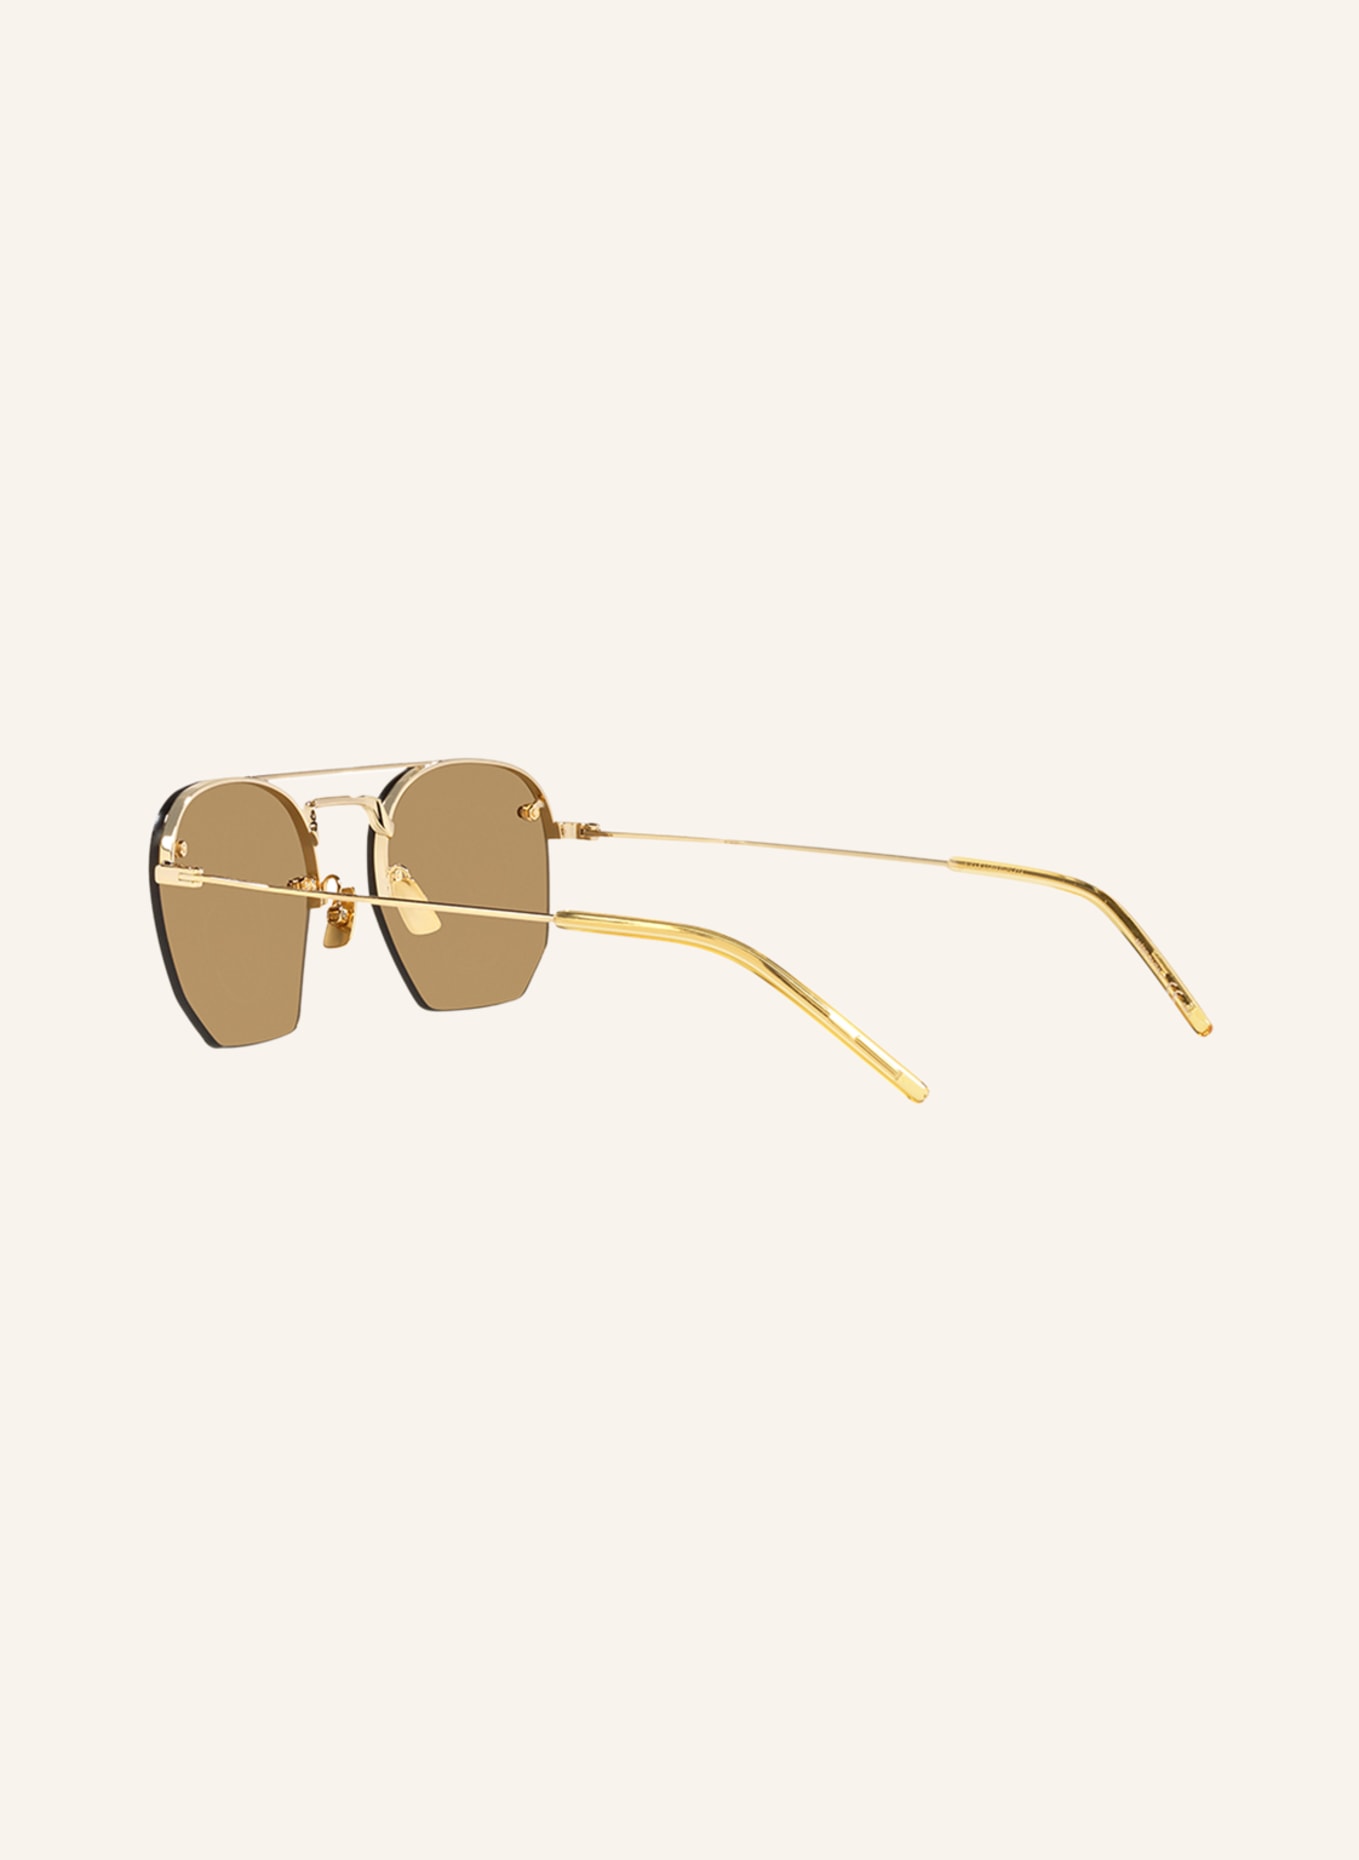 SAINT LAURENT Sunglasses YS000274, Color: 2310D1 - GOLD/BROWN (Image 4)